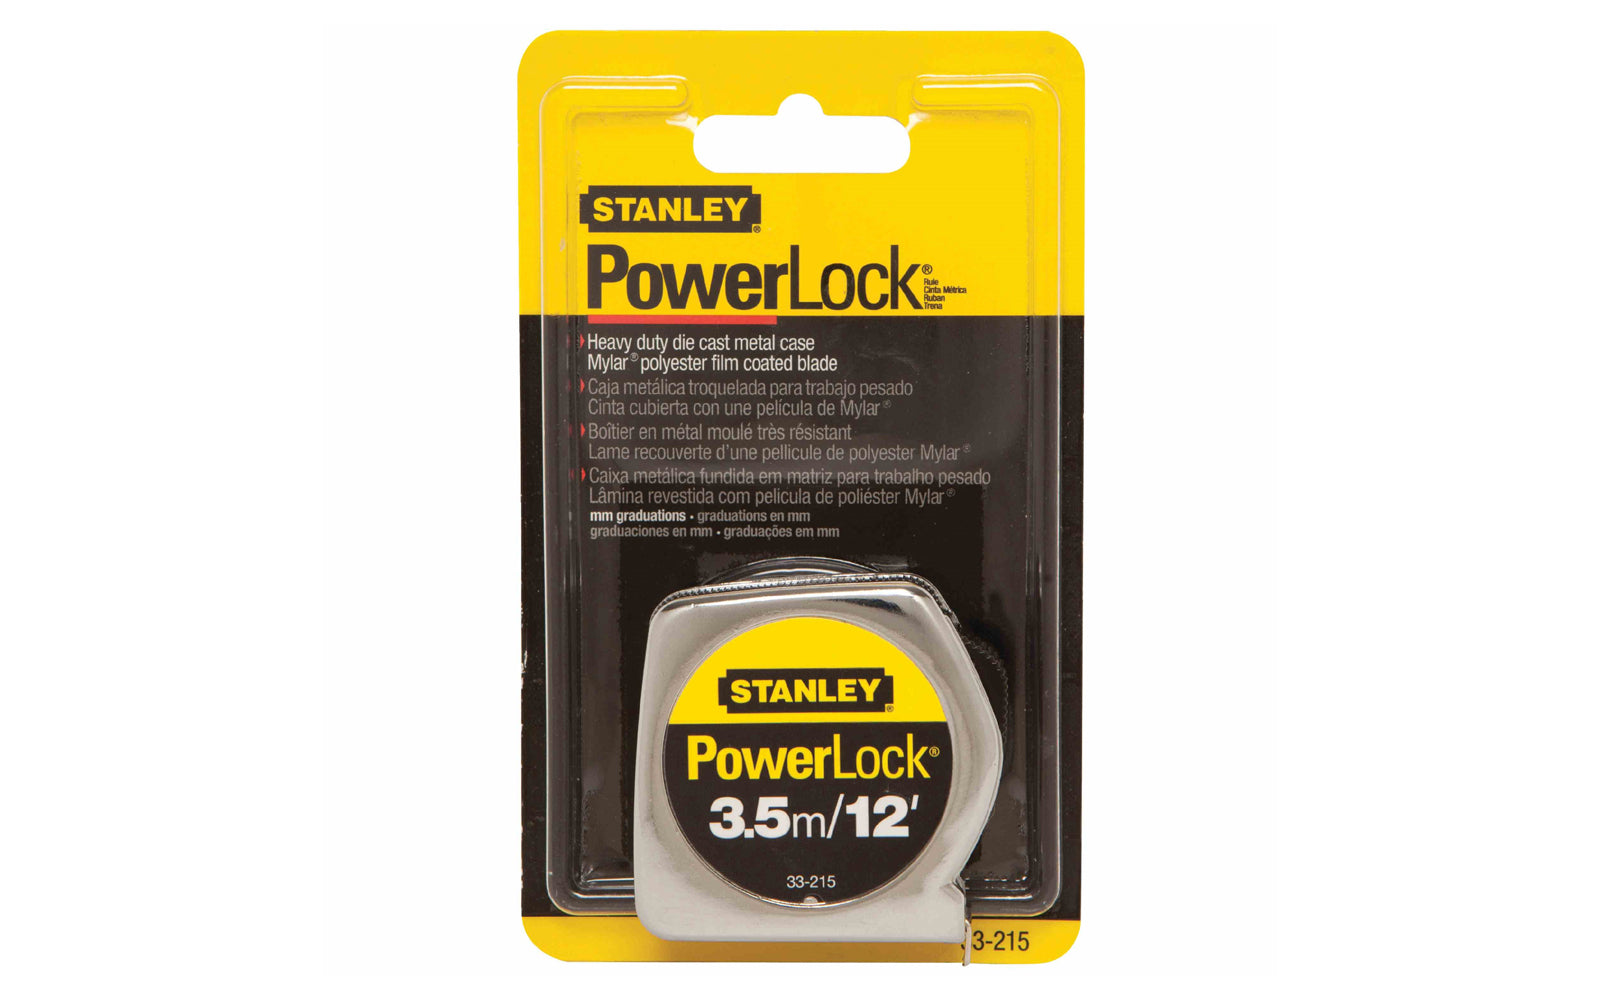 Stanley Powerlock 3.5m / 12' Tape Measure - Millimeter Scale ~ 33-215